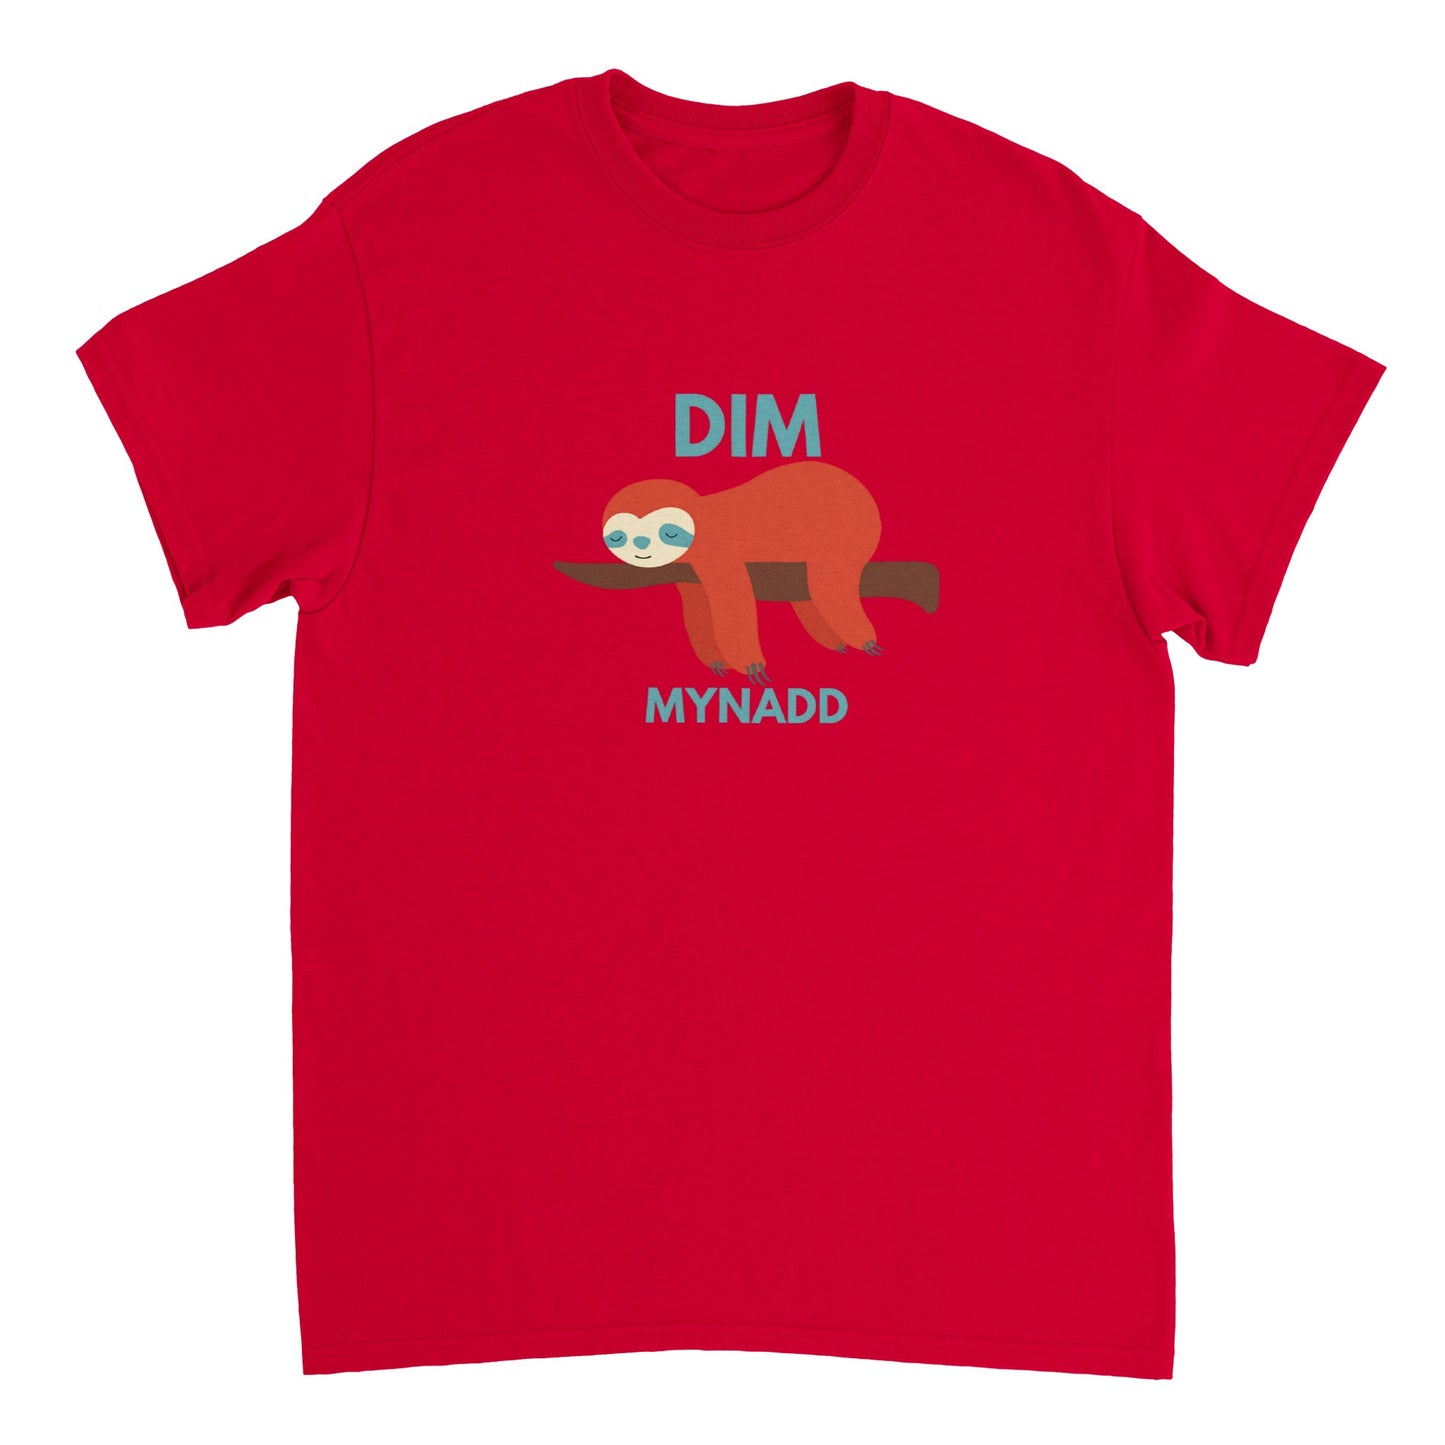 Dim Mynadd - Heavyweight Unisex Crewneck T-shirt